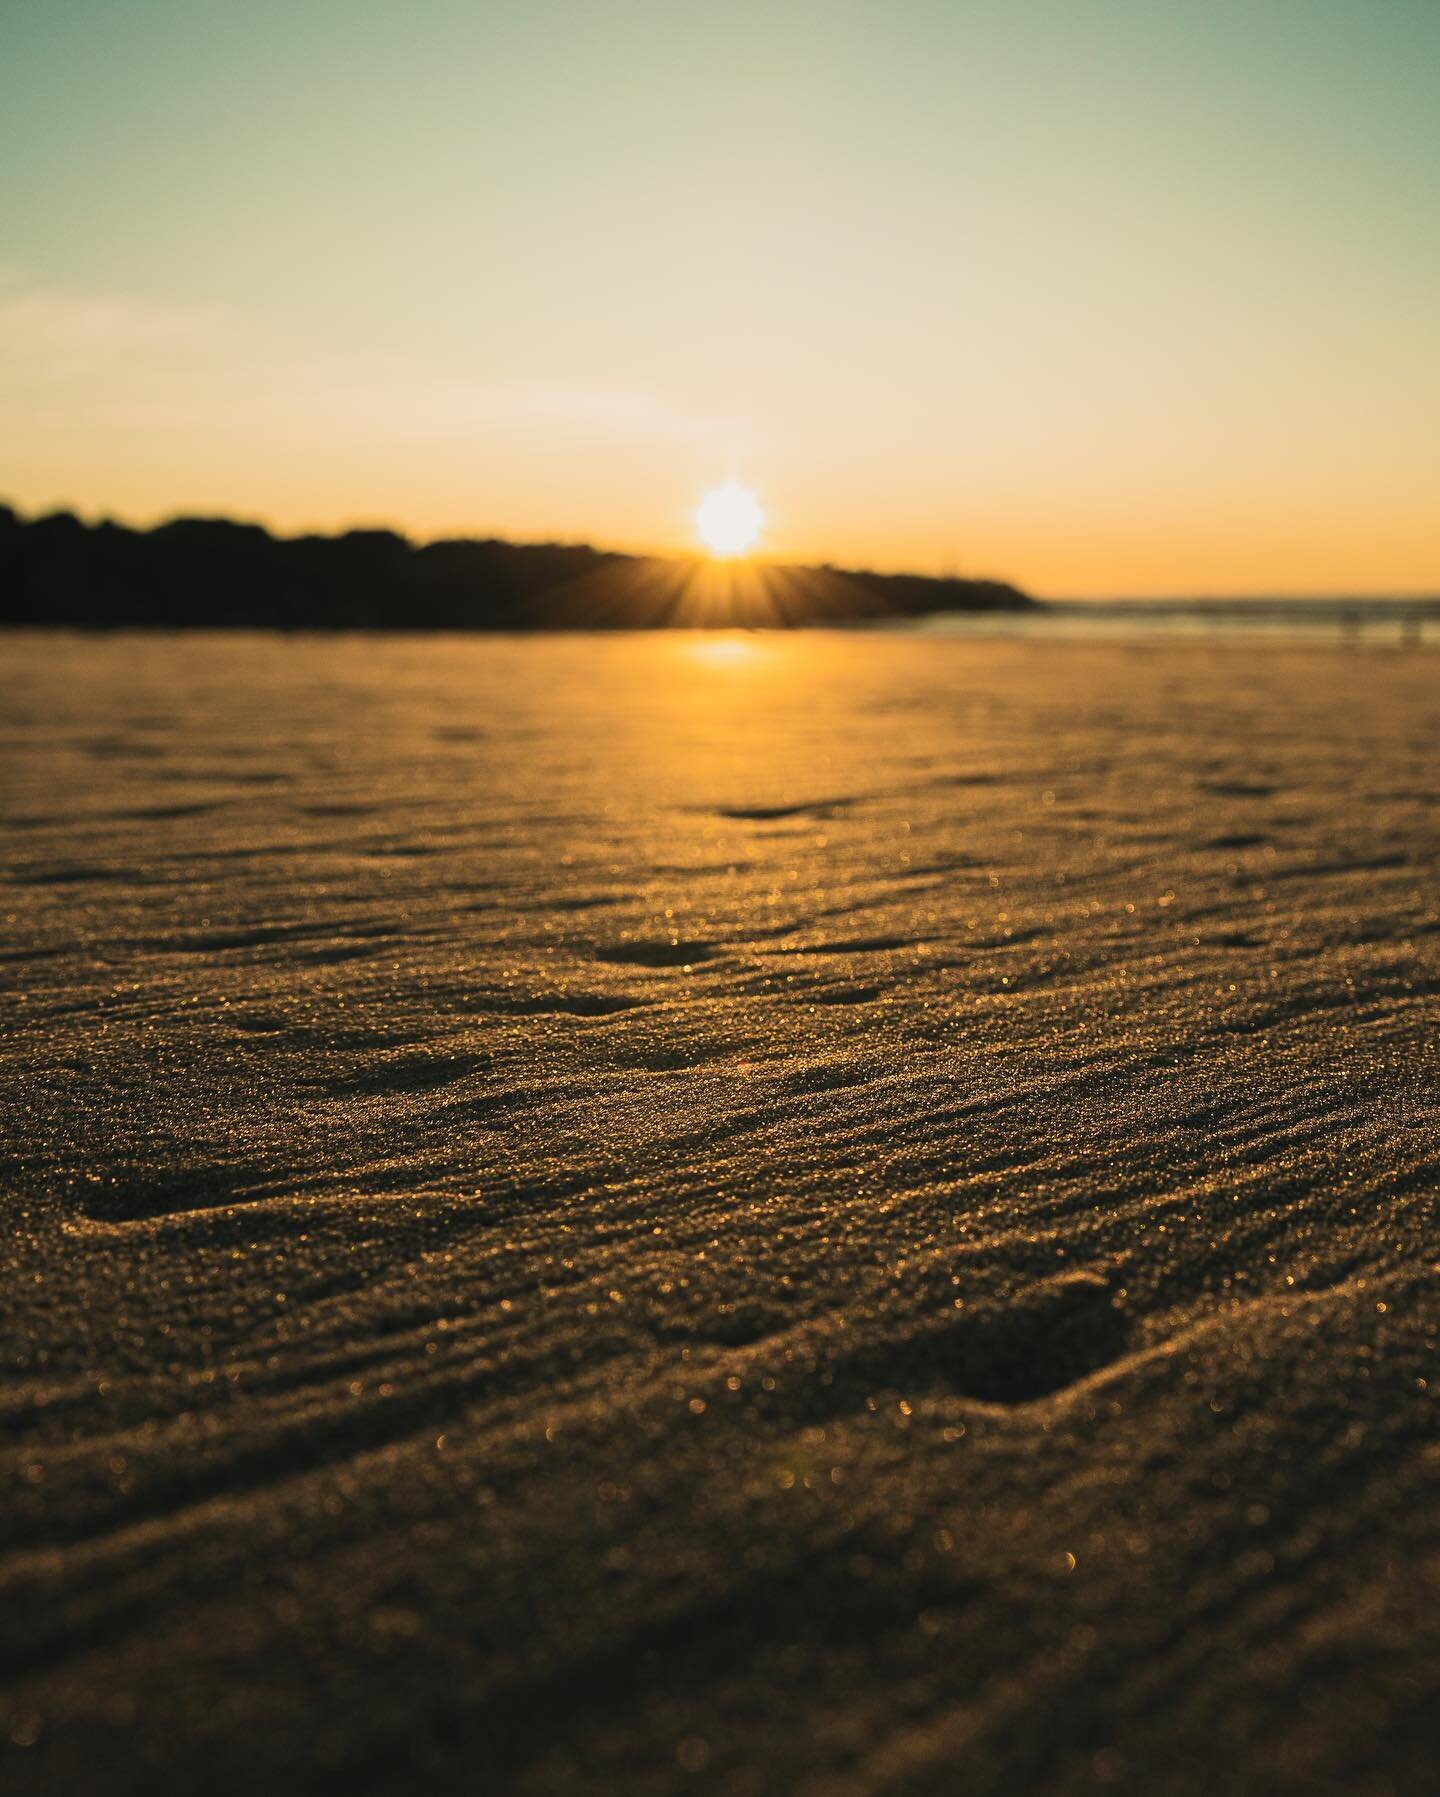 Gold sands
.
.
.
.
.

#photography #landscapephotography #seascape #landscape #seascapephotography #povphotography #youtube #canonaustralia #canonphotography #canonr6 #photooftheday #sunrise #opticalwander #cpphotos #puregoldcoast #purenordicvibe #ra